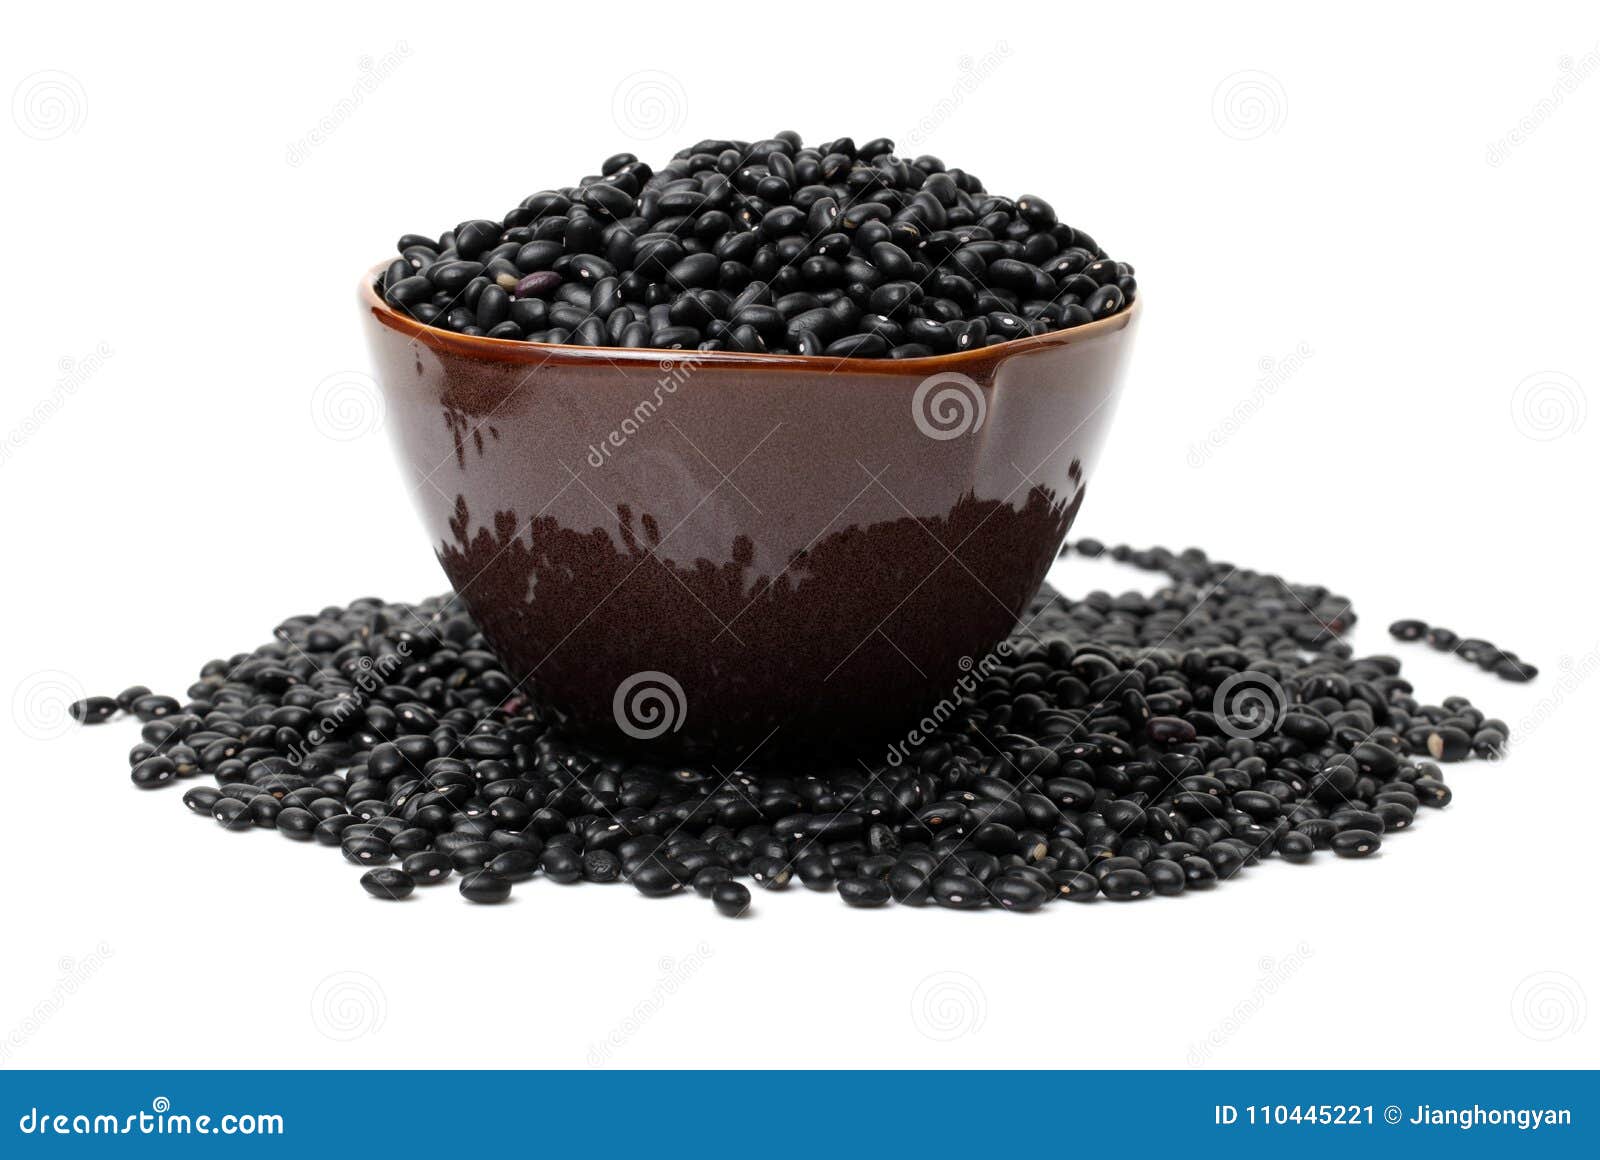 black bean. soja, china